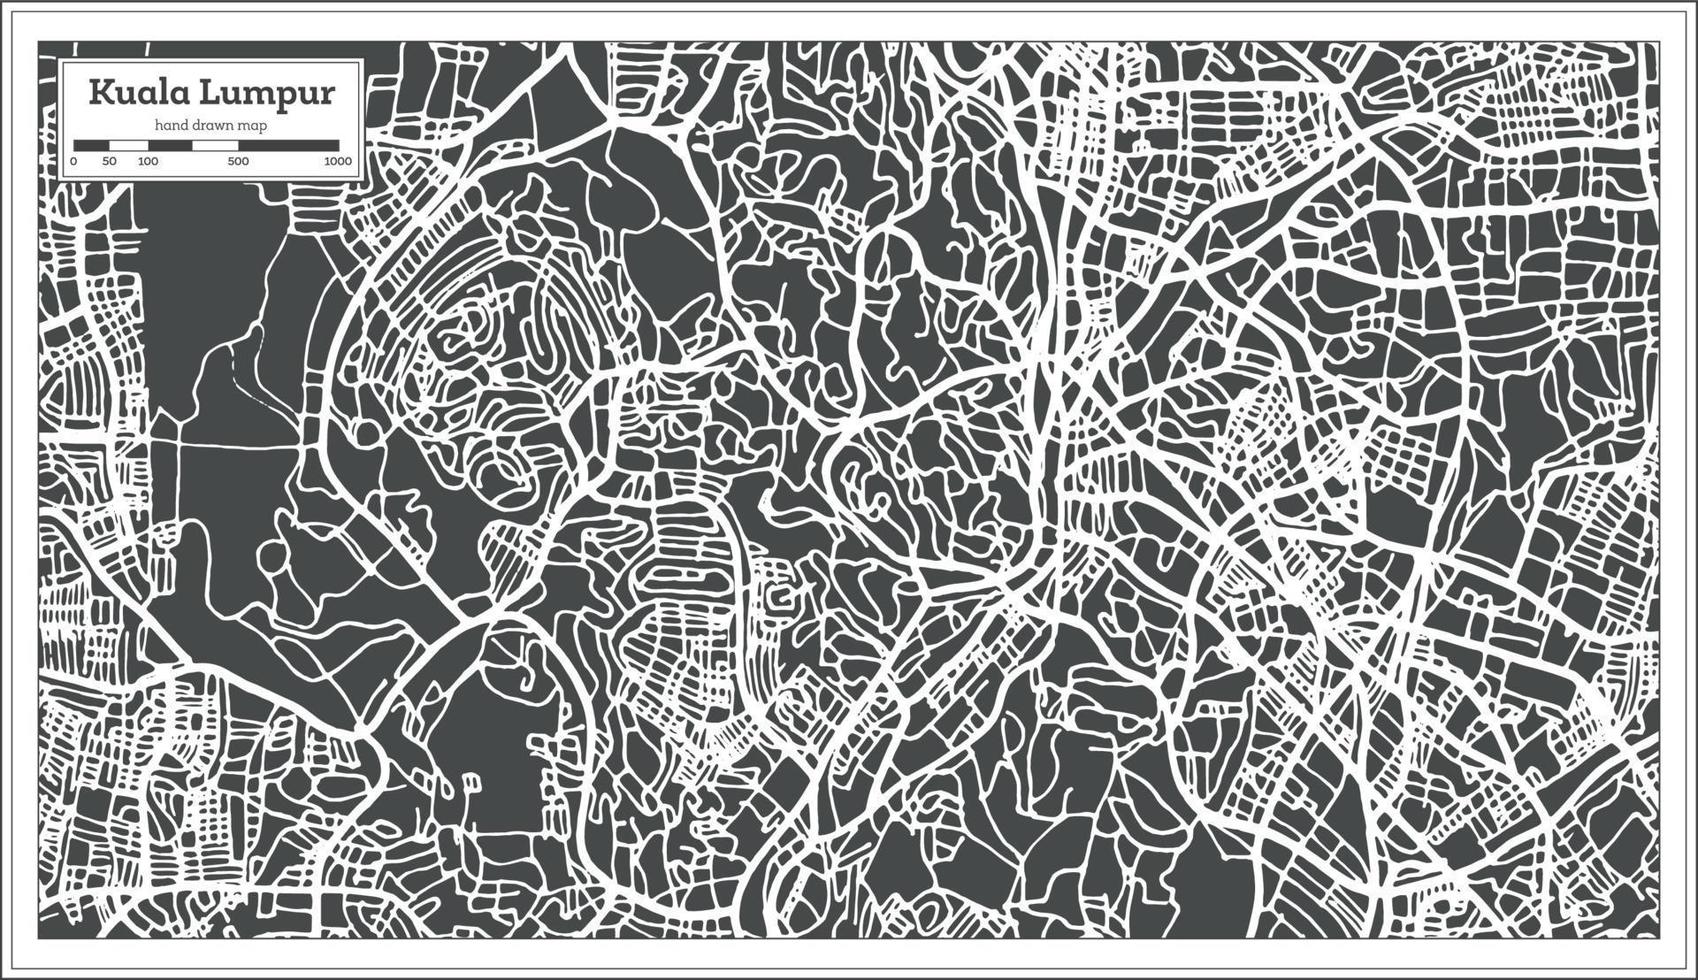 carte de la ville de kuala lumpur en malaisie dans un style rétro. carte muette. vecteur